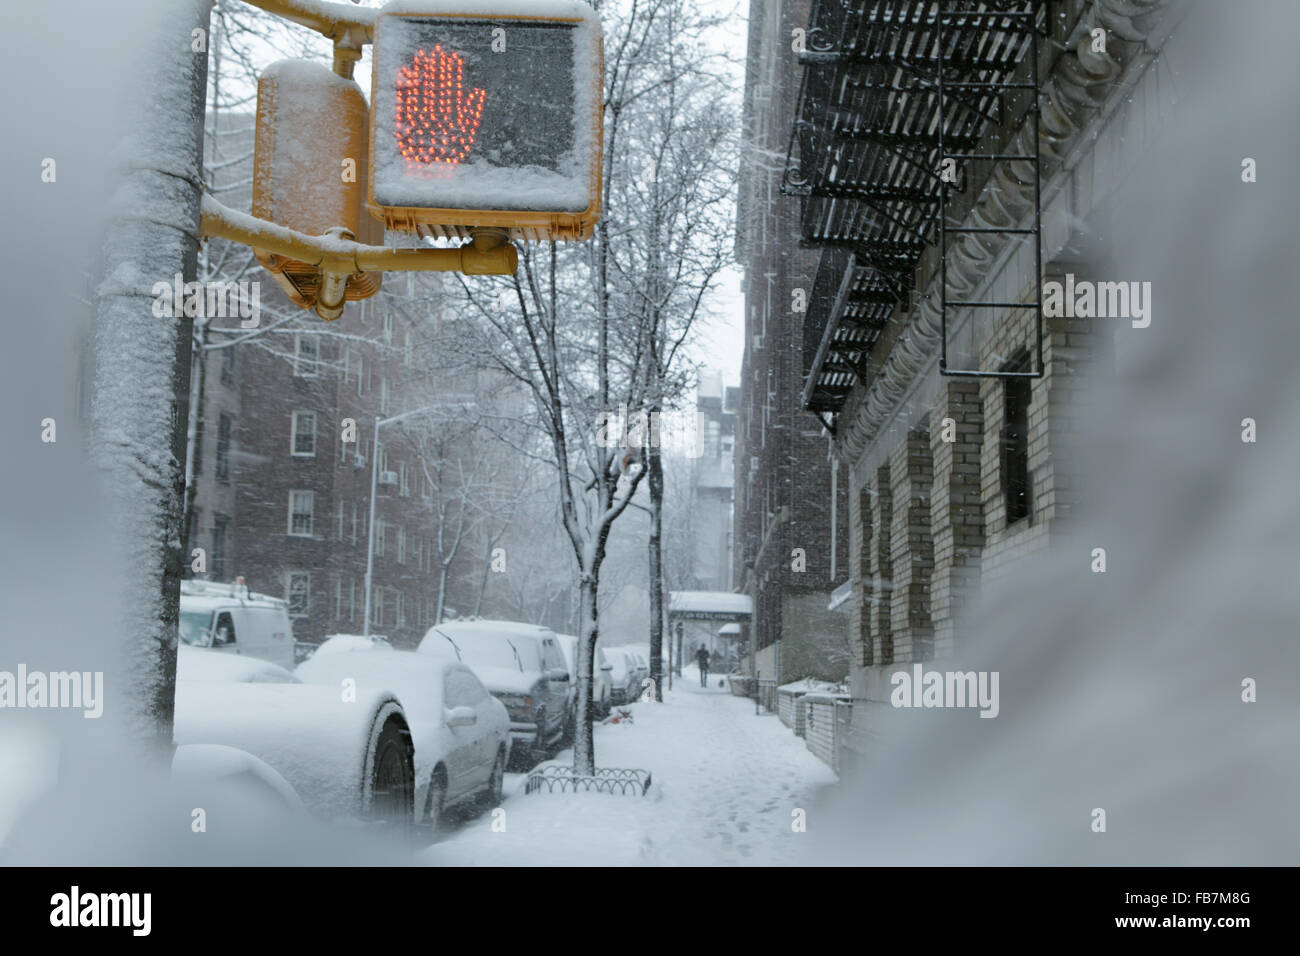 La neige a couvert Brooklyn street crossing panneau de circulation en hiver. La neige tombe au cours d'une tempête à la fin de l'hiver dans le Brooklyn Heights Banque D'Images